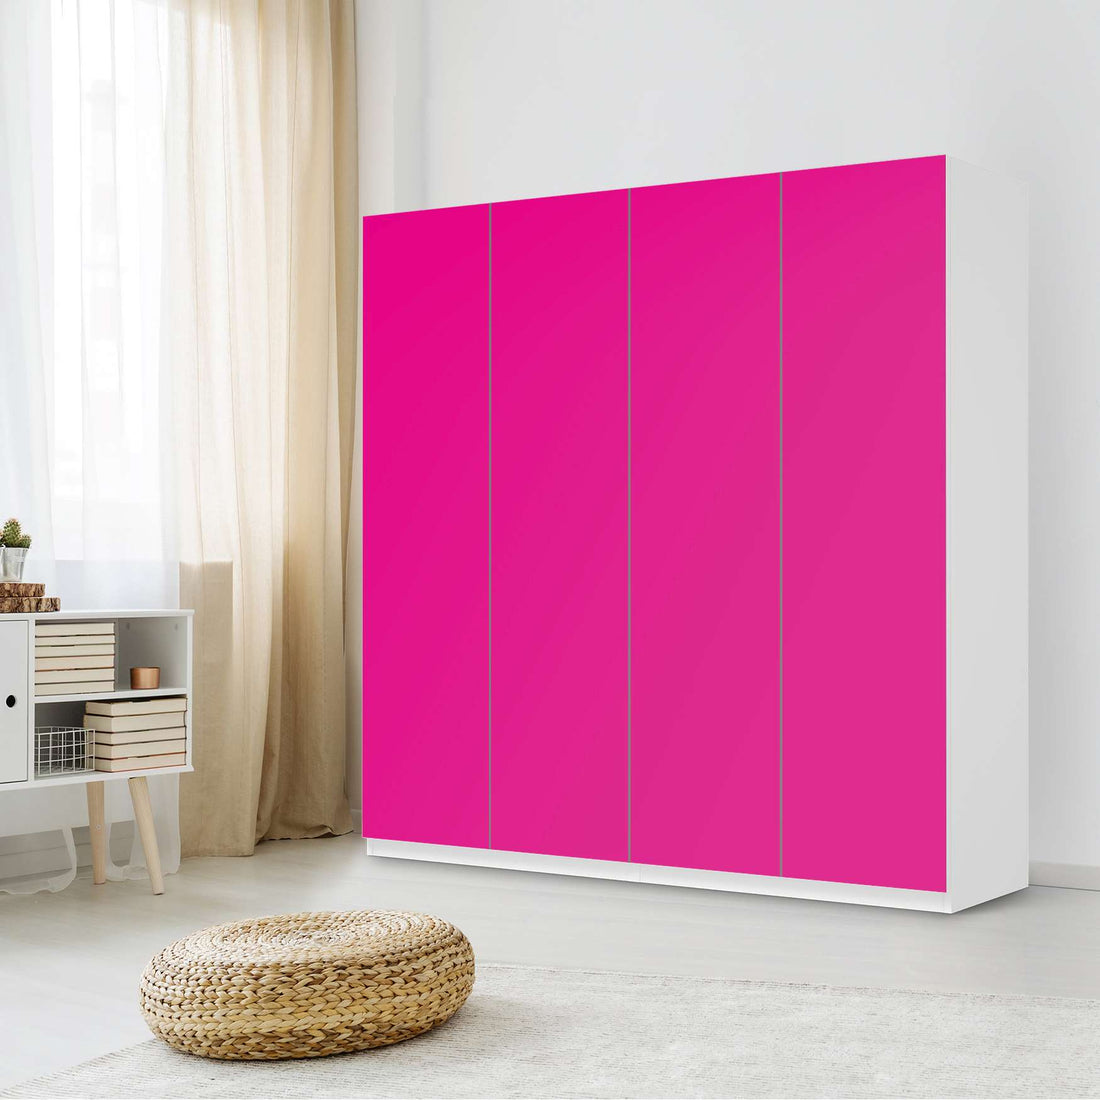 Klebefolie für Schränke Pink Dark - IKEA Pax Schrank 201 cm Höhe - 4 Türen - Schlafzimmer